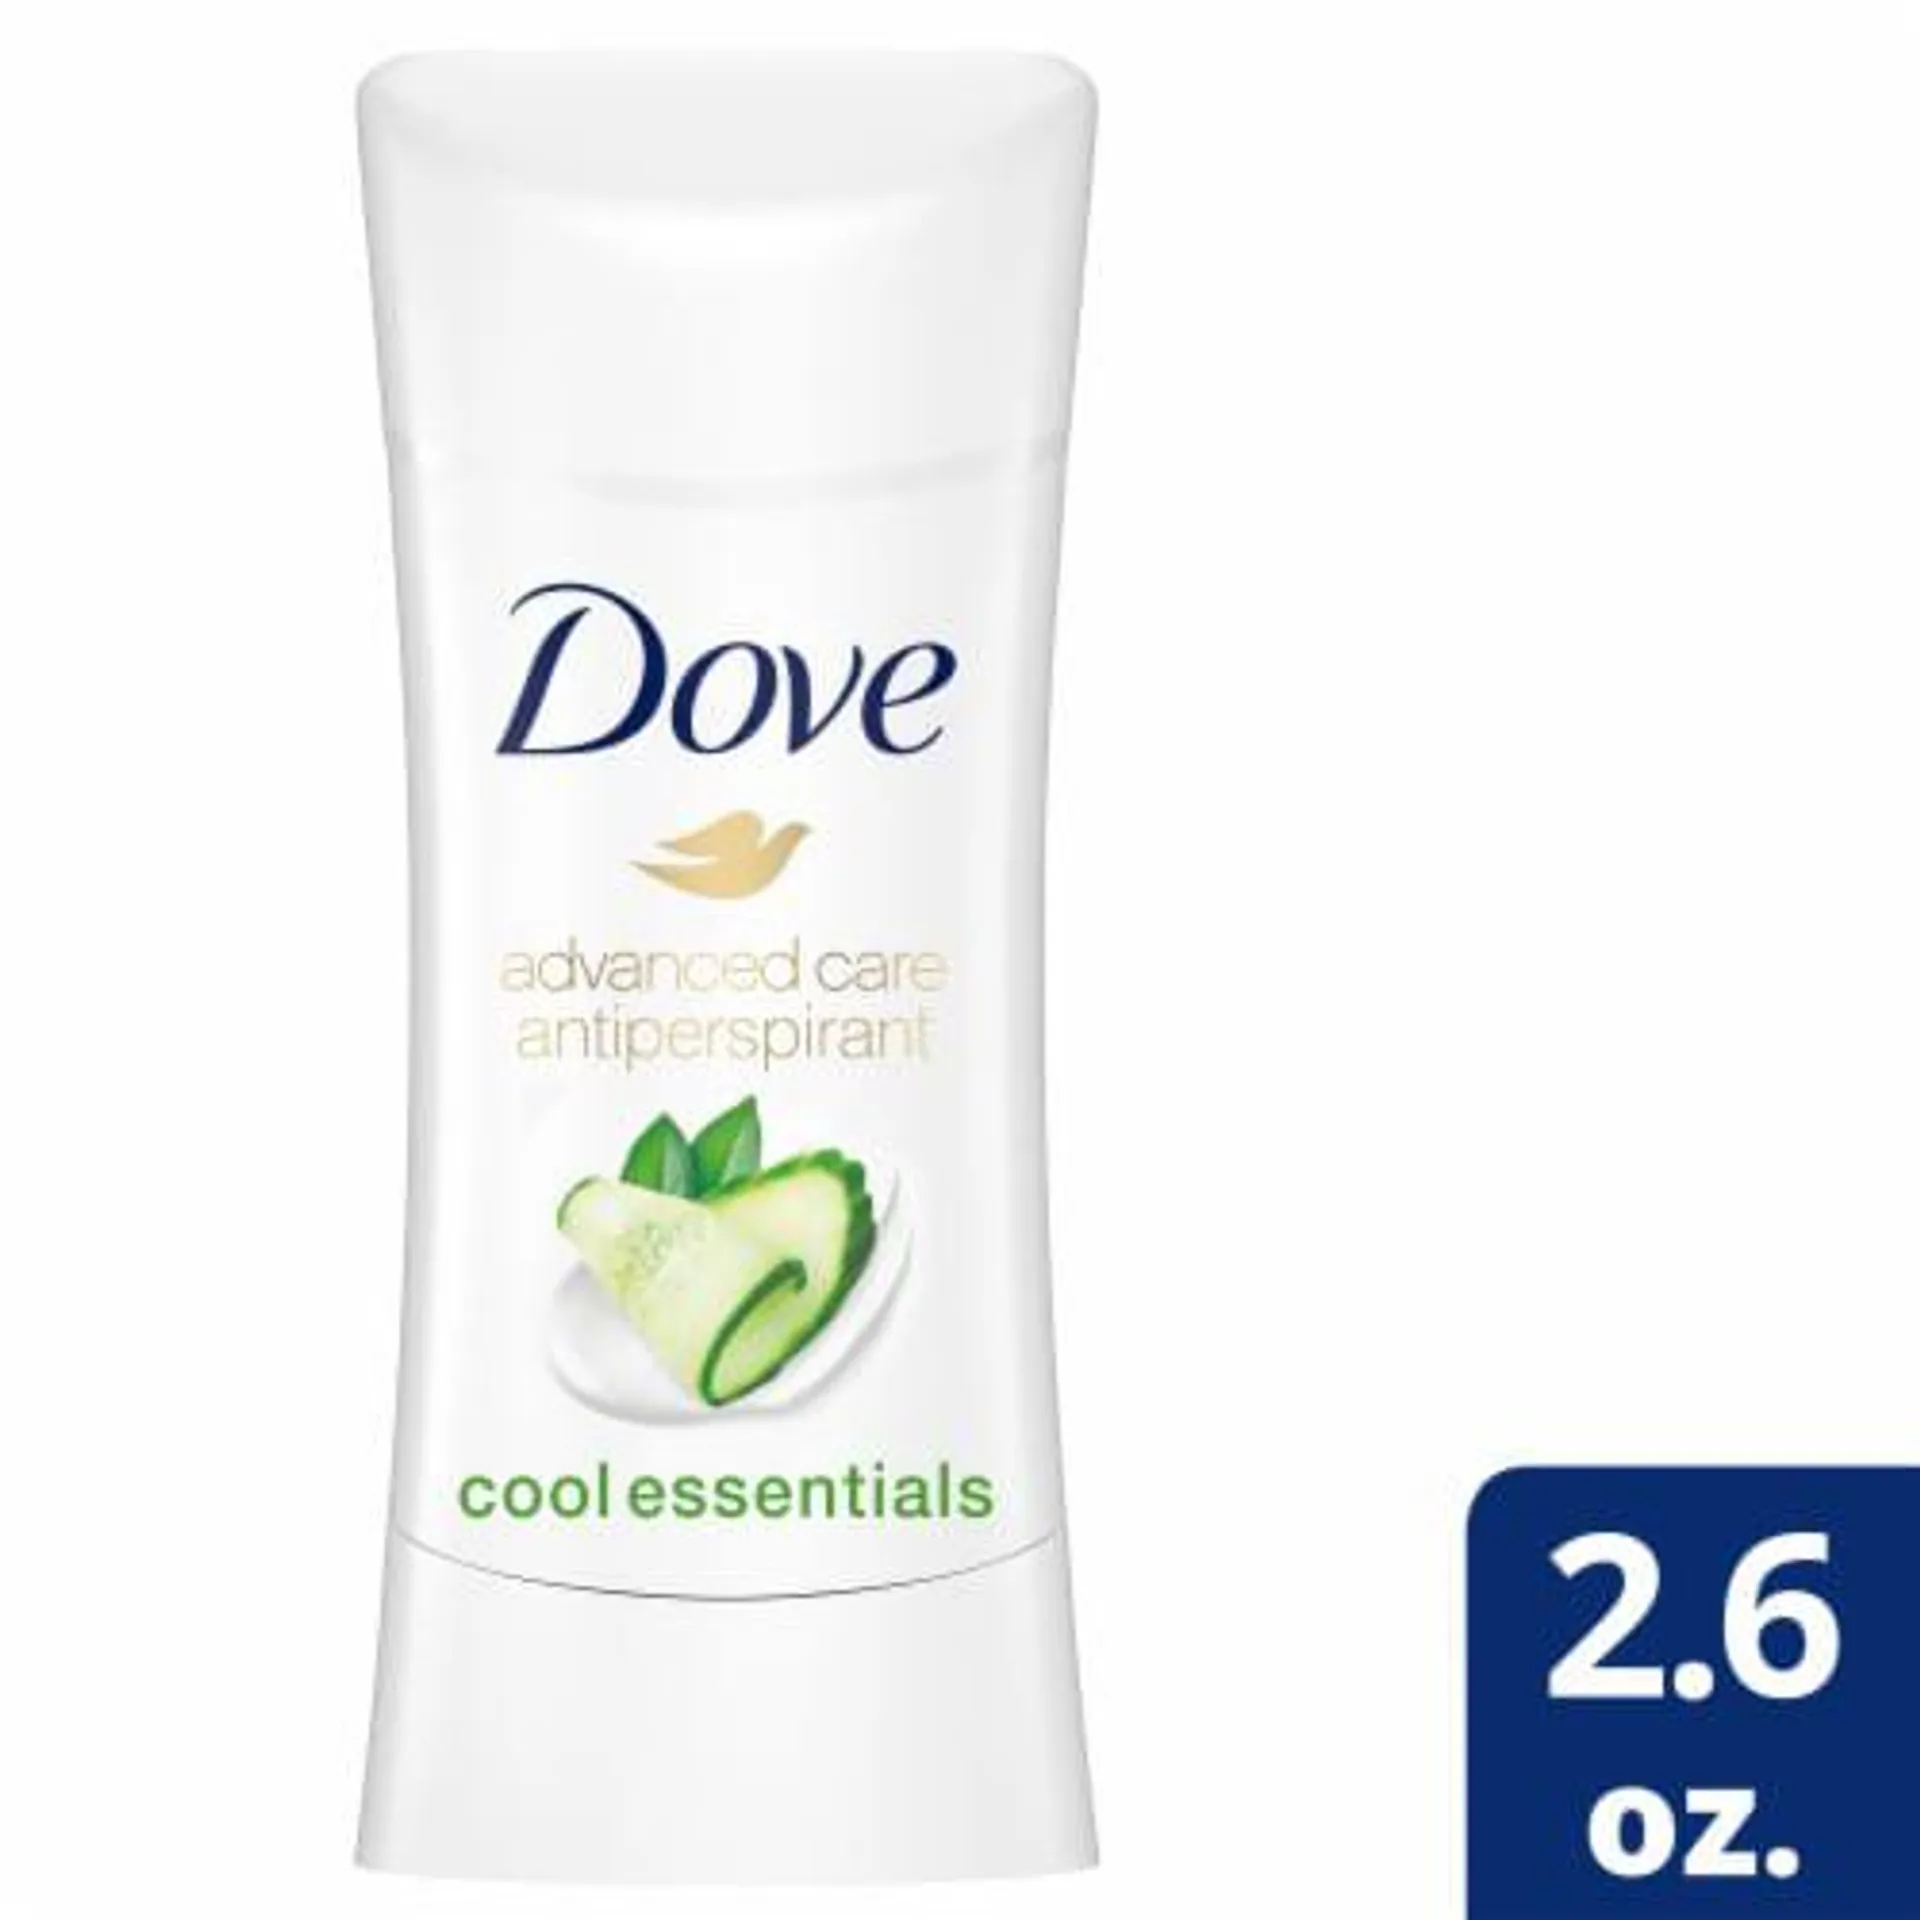 Dove Cool Essentials Antiperspirant Deodorant